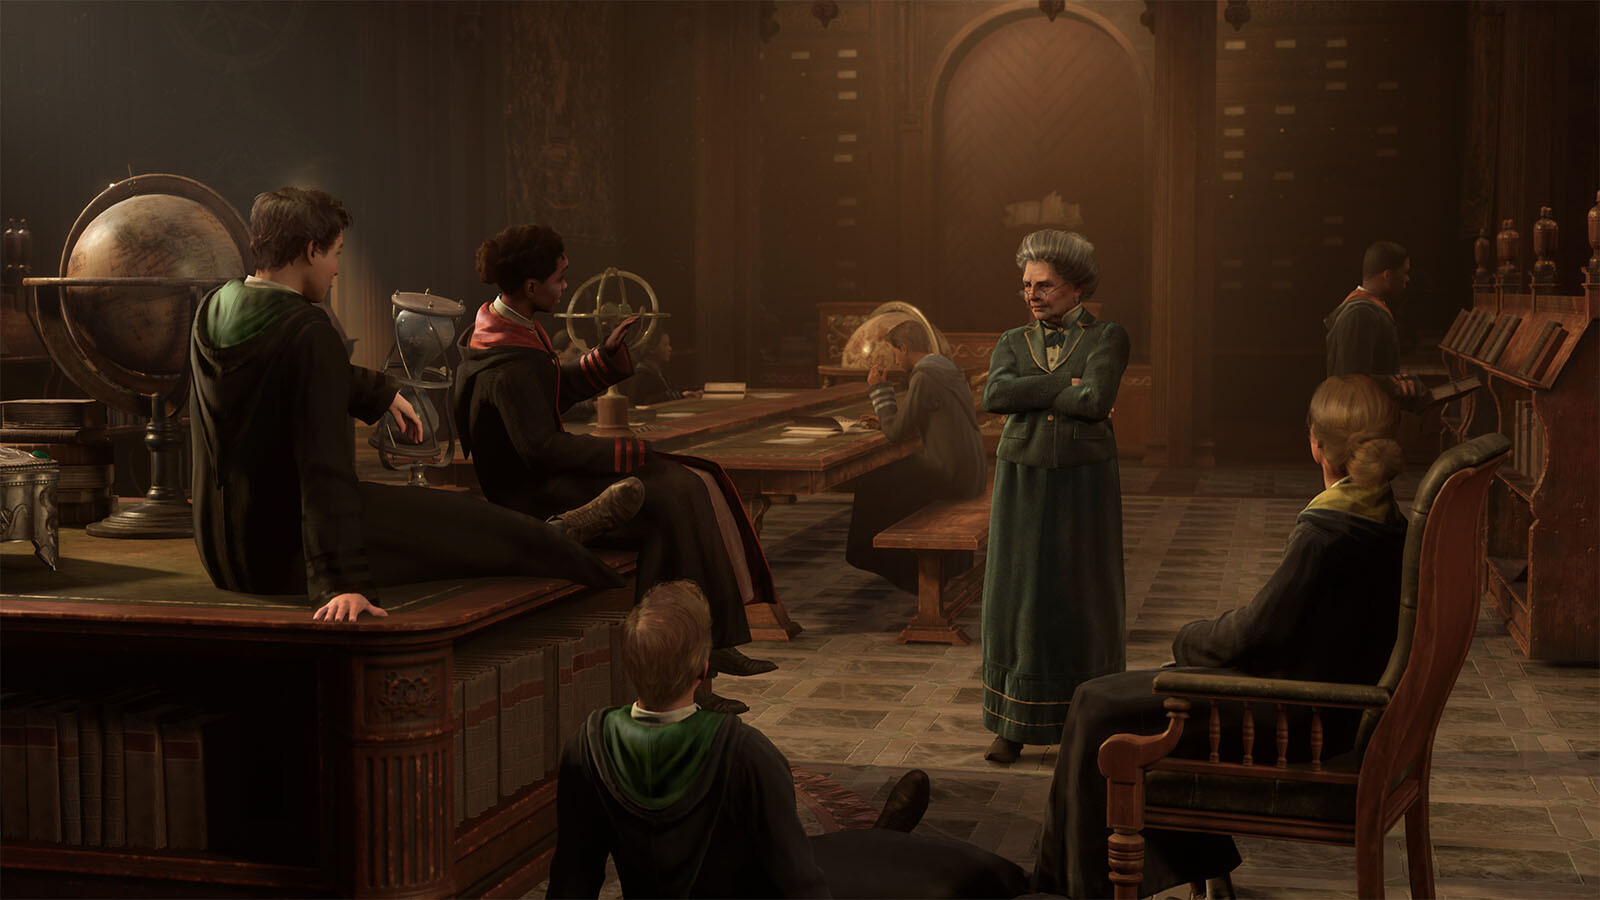 Hogwarts Legacy L'héritage de Poudlard : la Collector PS5 est